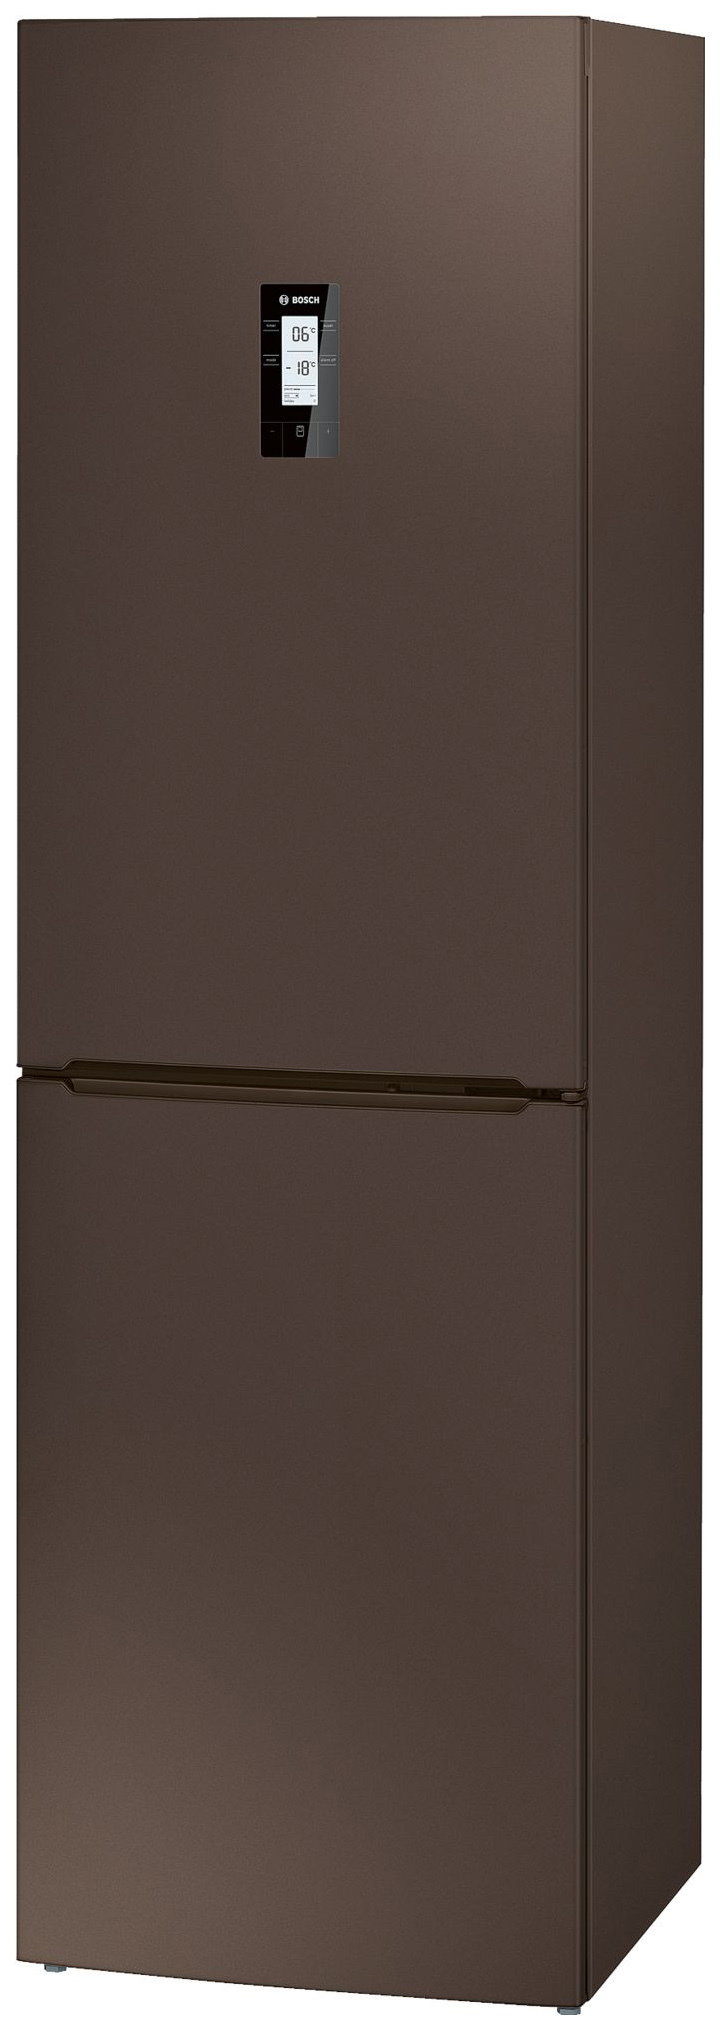 Холодильник Bosch KGN39XD18R коричневый открывалка для бутылок atlantis коричневый